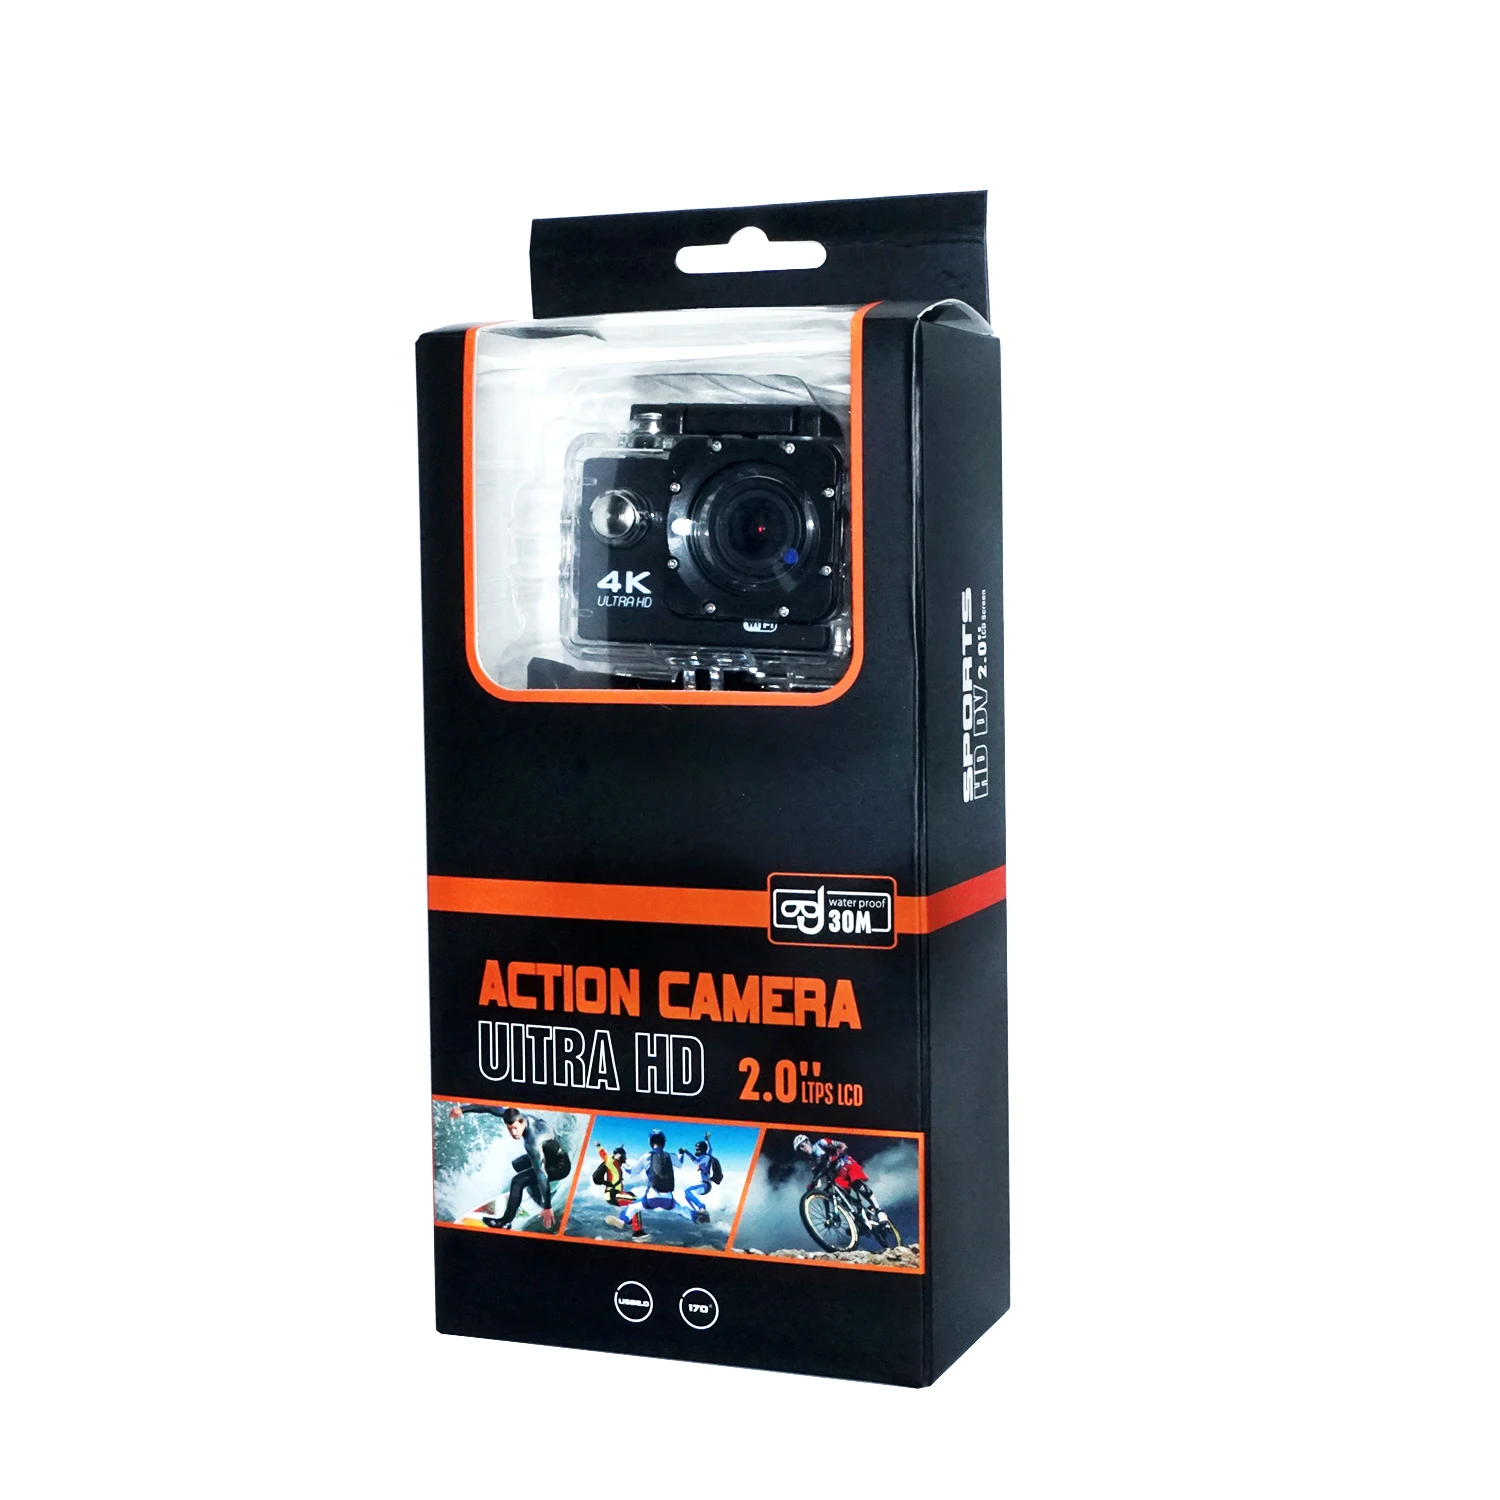 4k action camera 2